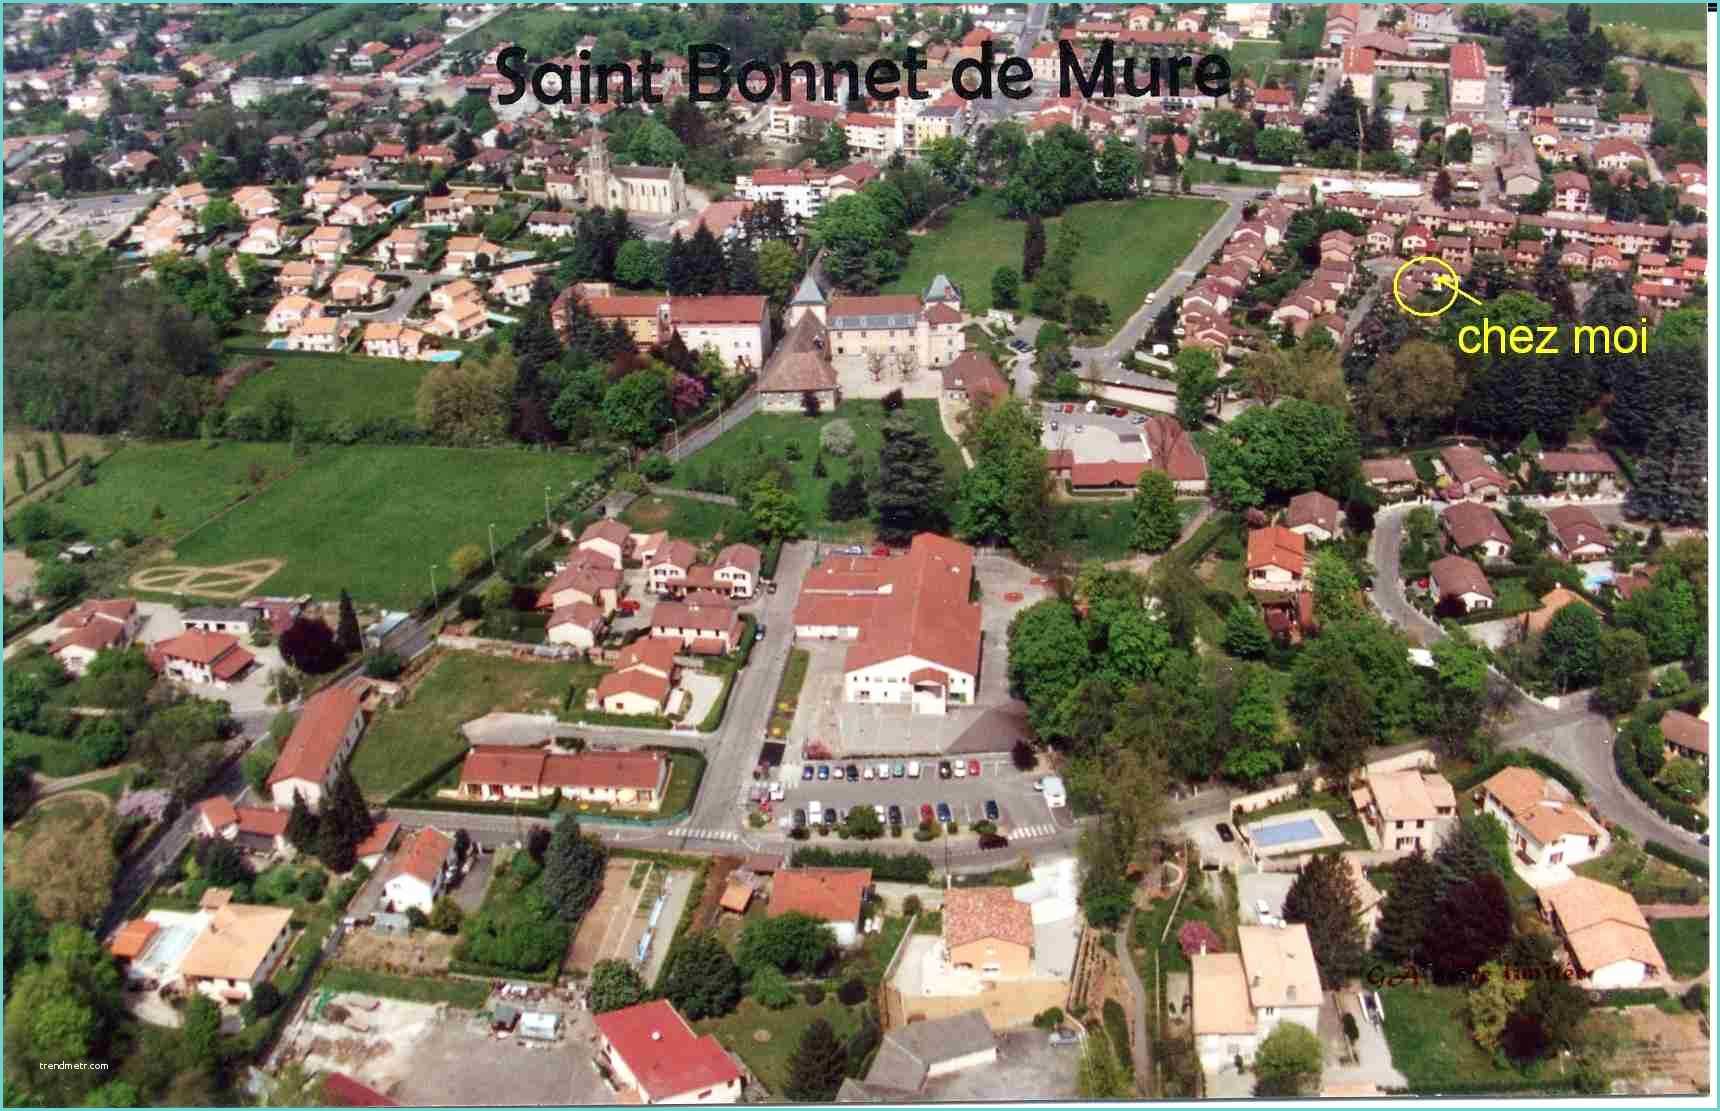 Piscine Saint Bonnet De Mure St Bonnet